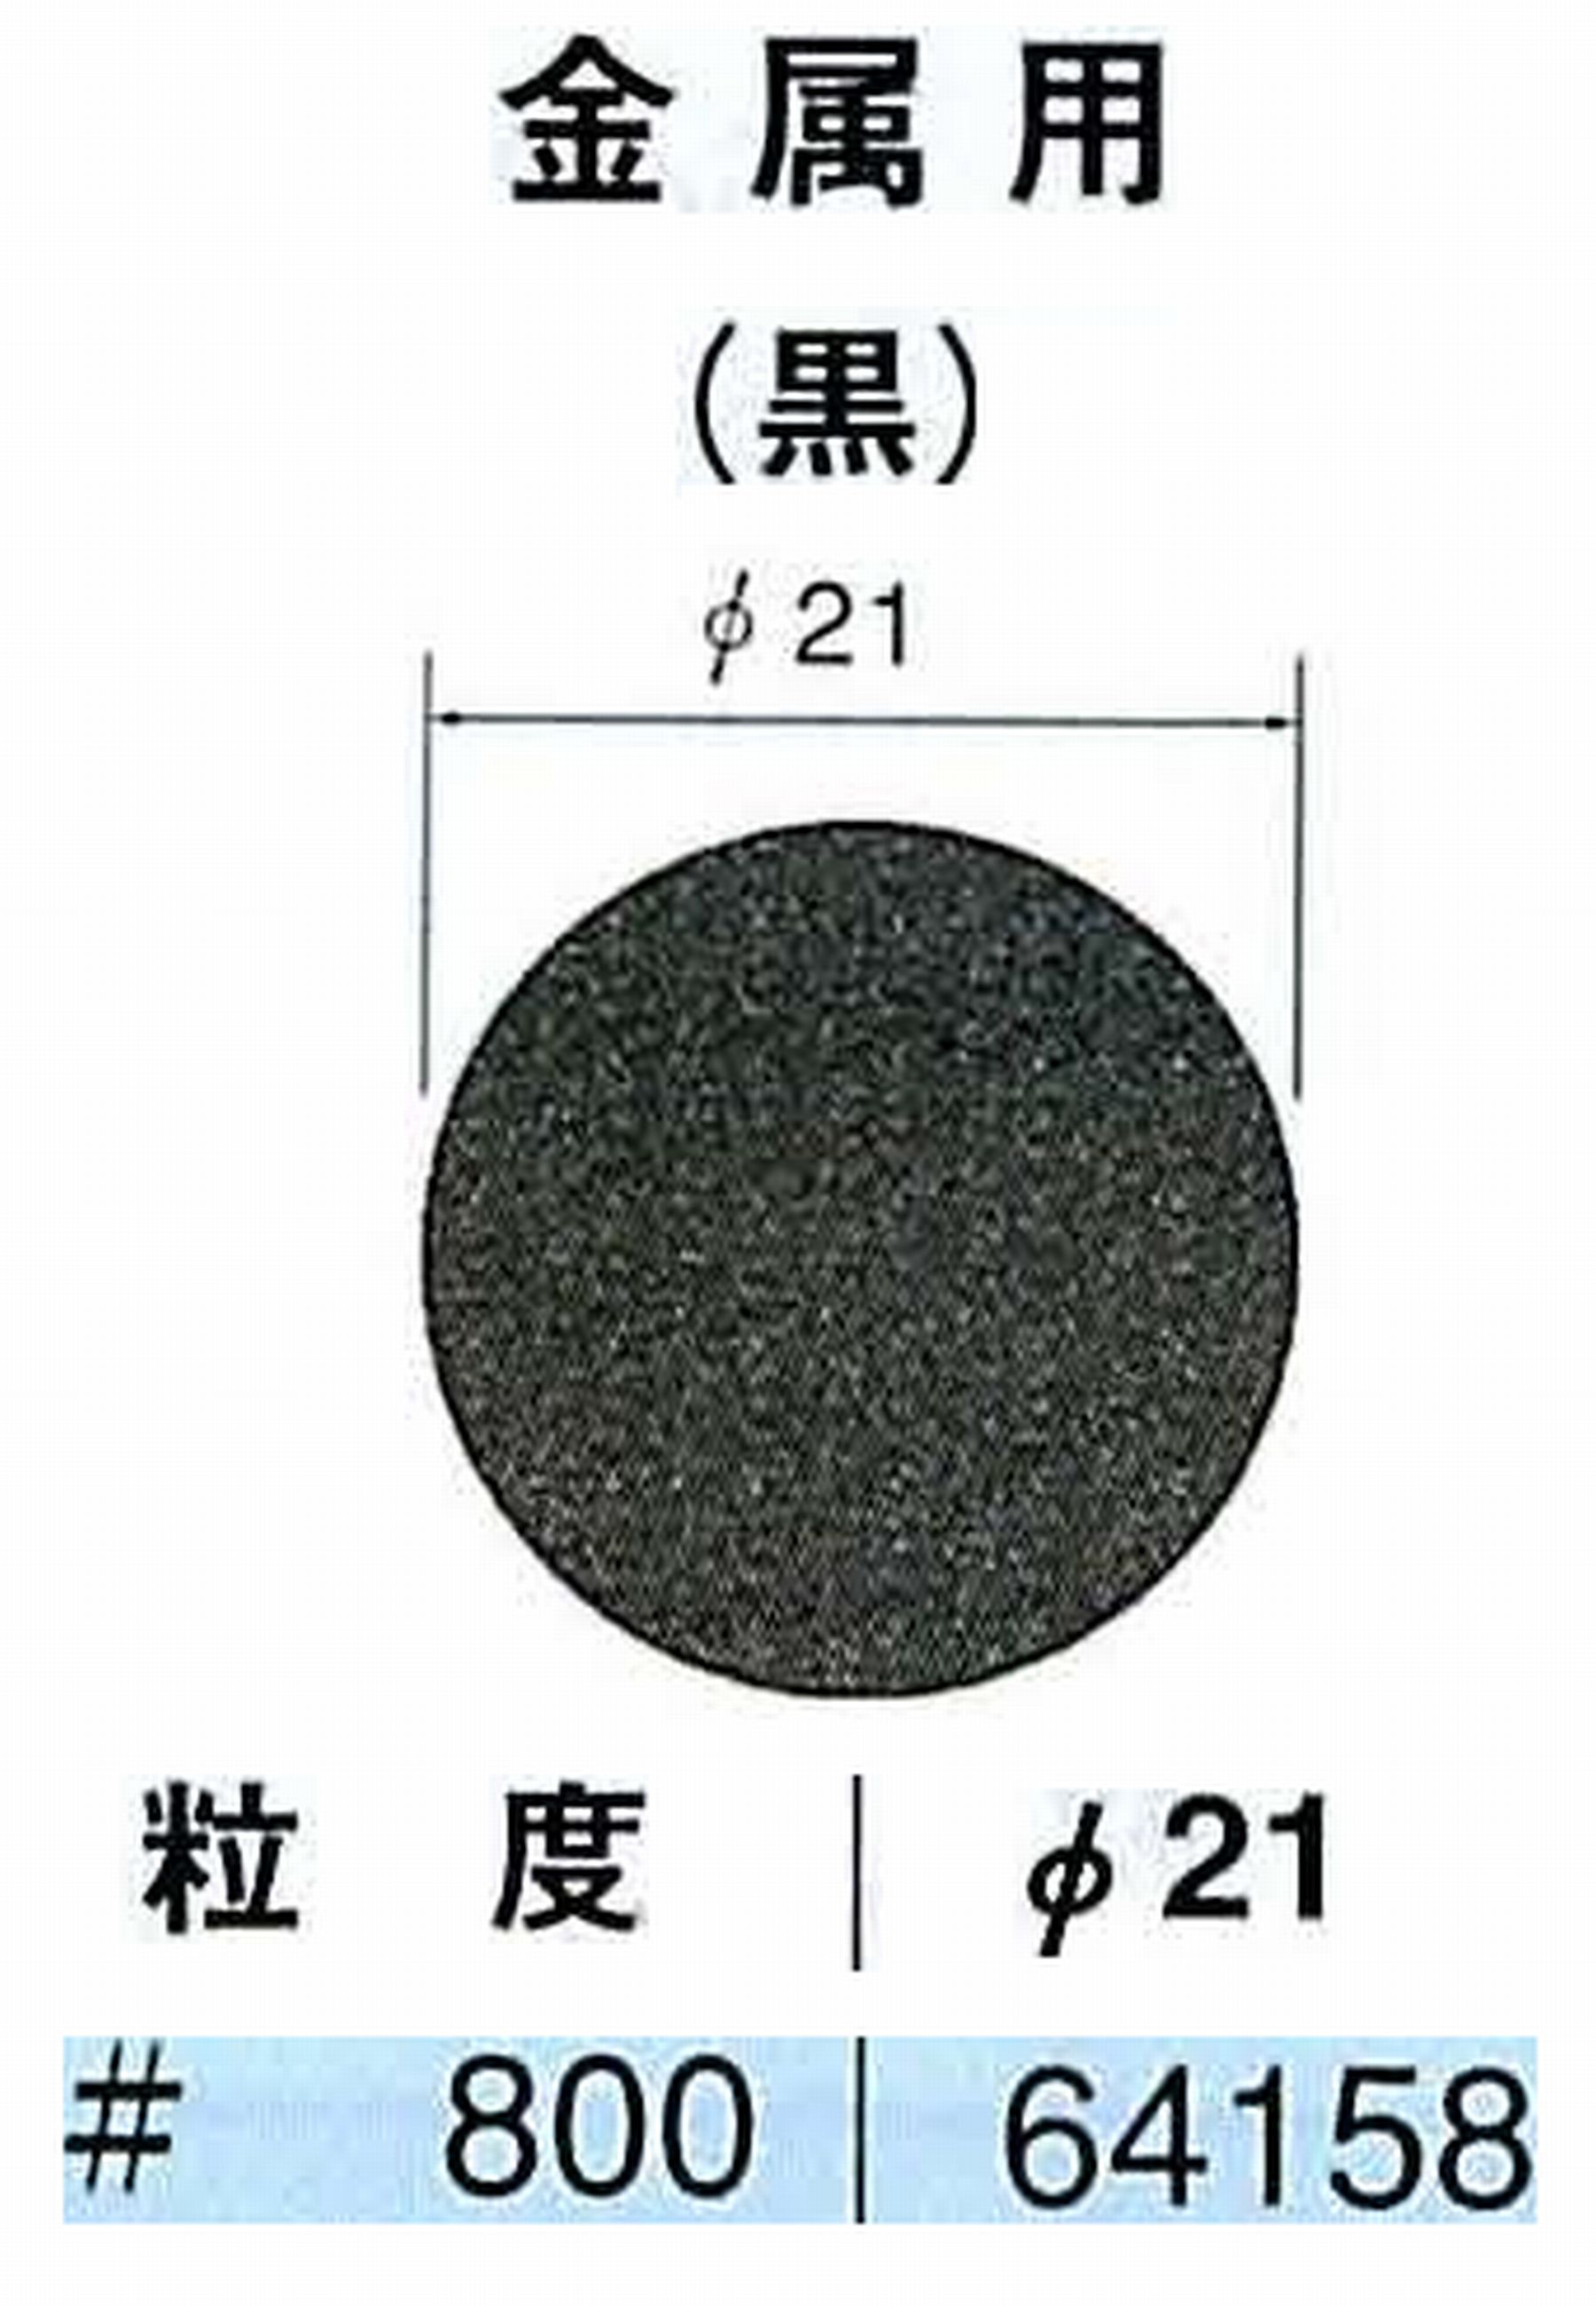 ナカニシ/NAKANISHI アングルグラインダ(電動・エアー) アングルアタッチメント専用工具 サンドペーパーディスク(紙基材タイプ)裏面のり処理 64158